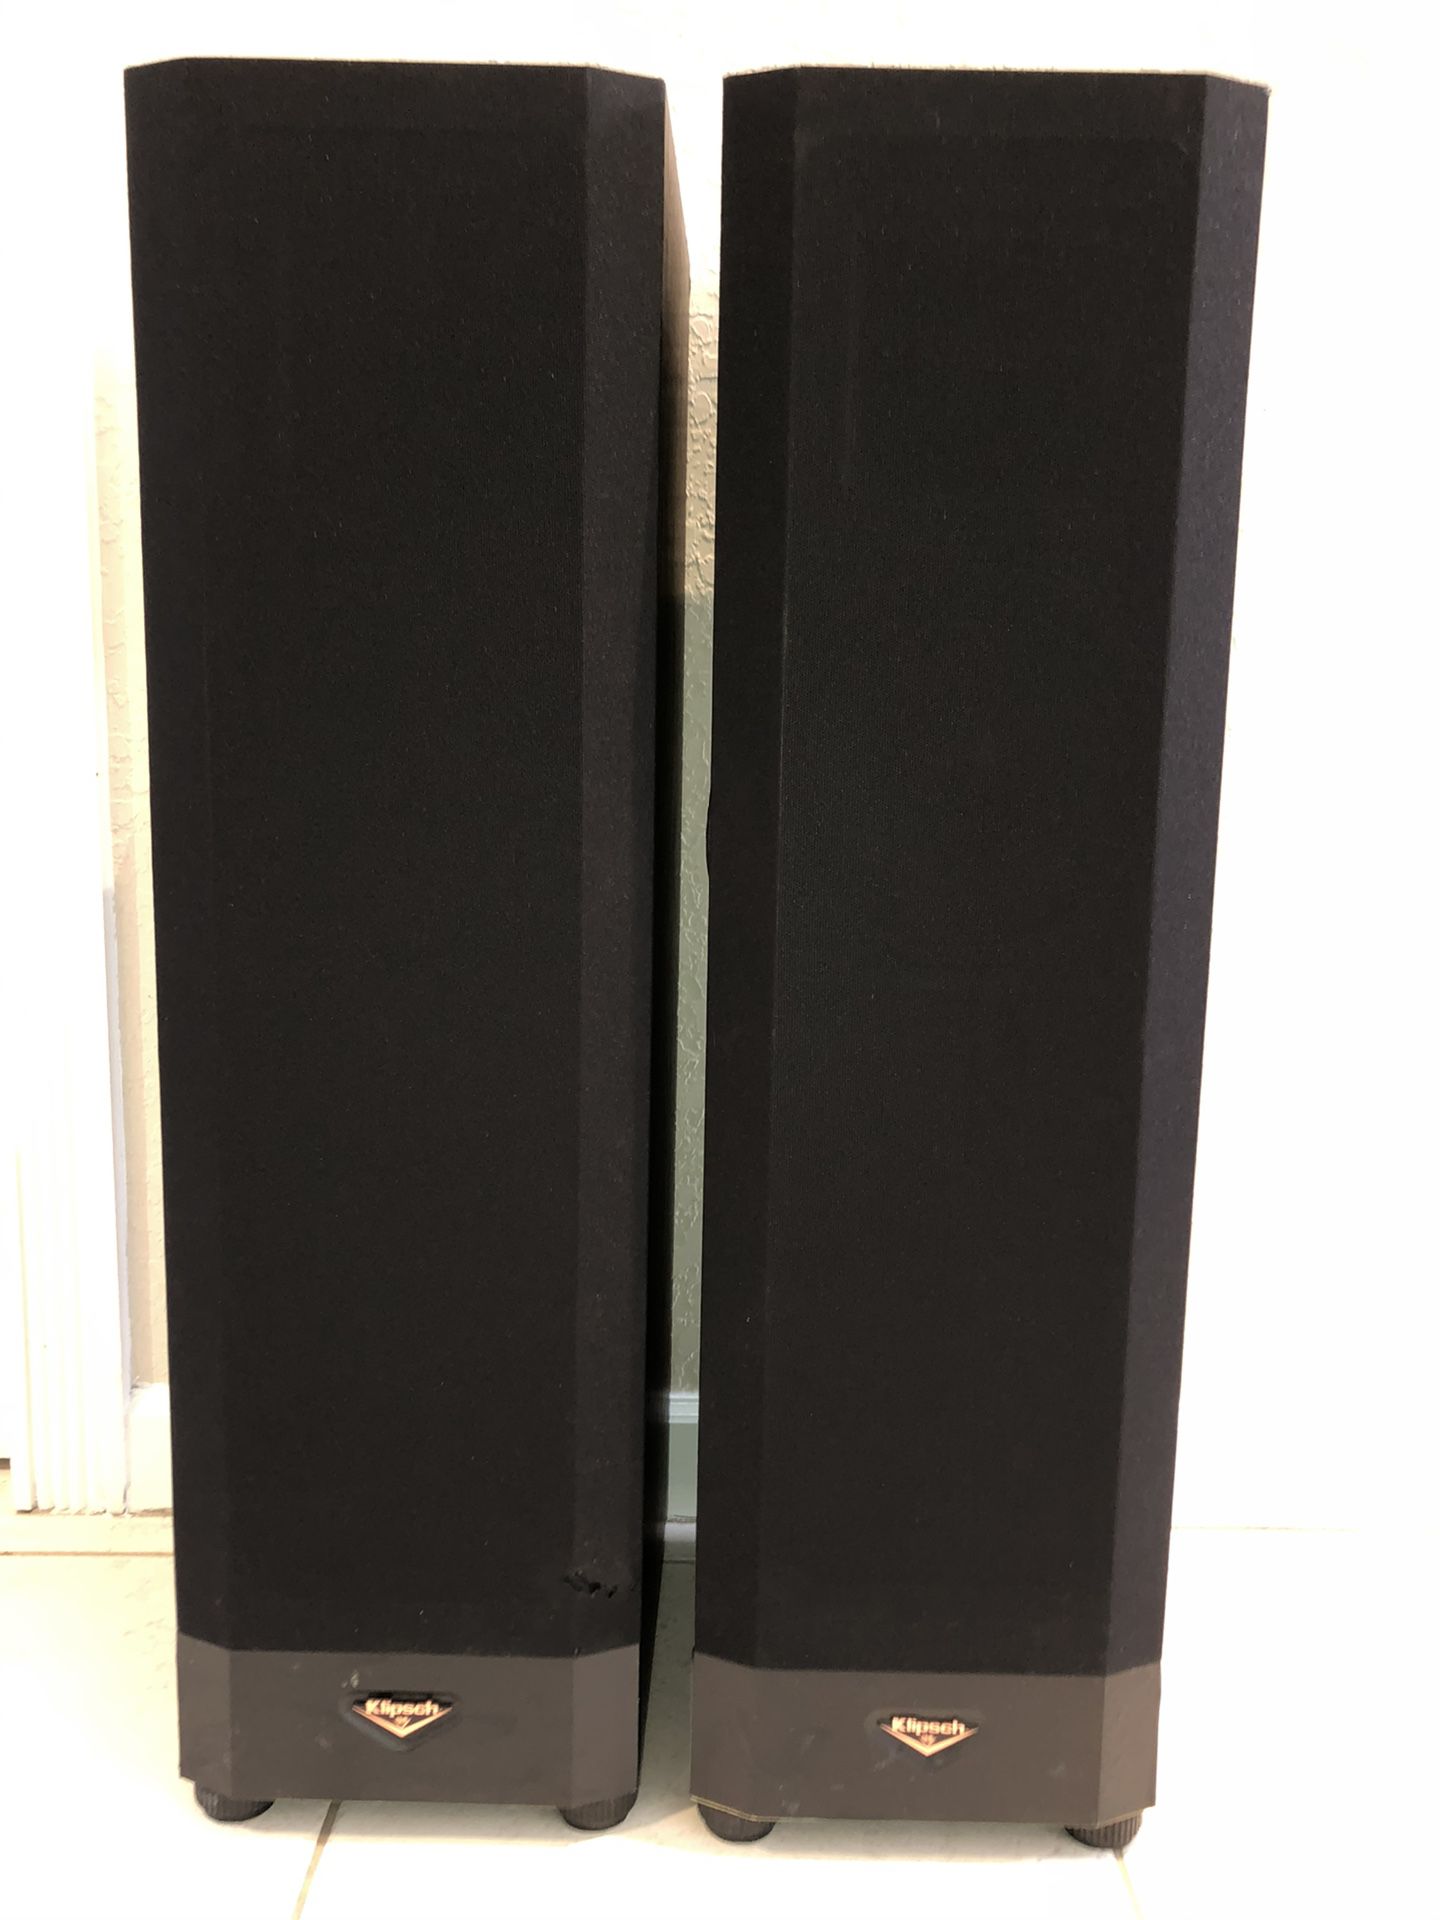 Klipsch KSF 8.5 Floor Speakers Amazing Sound!